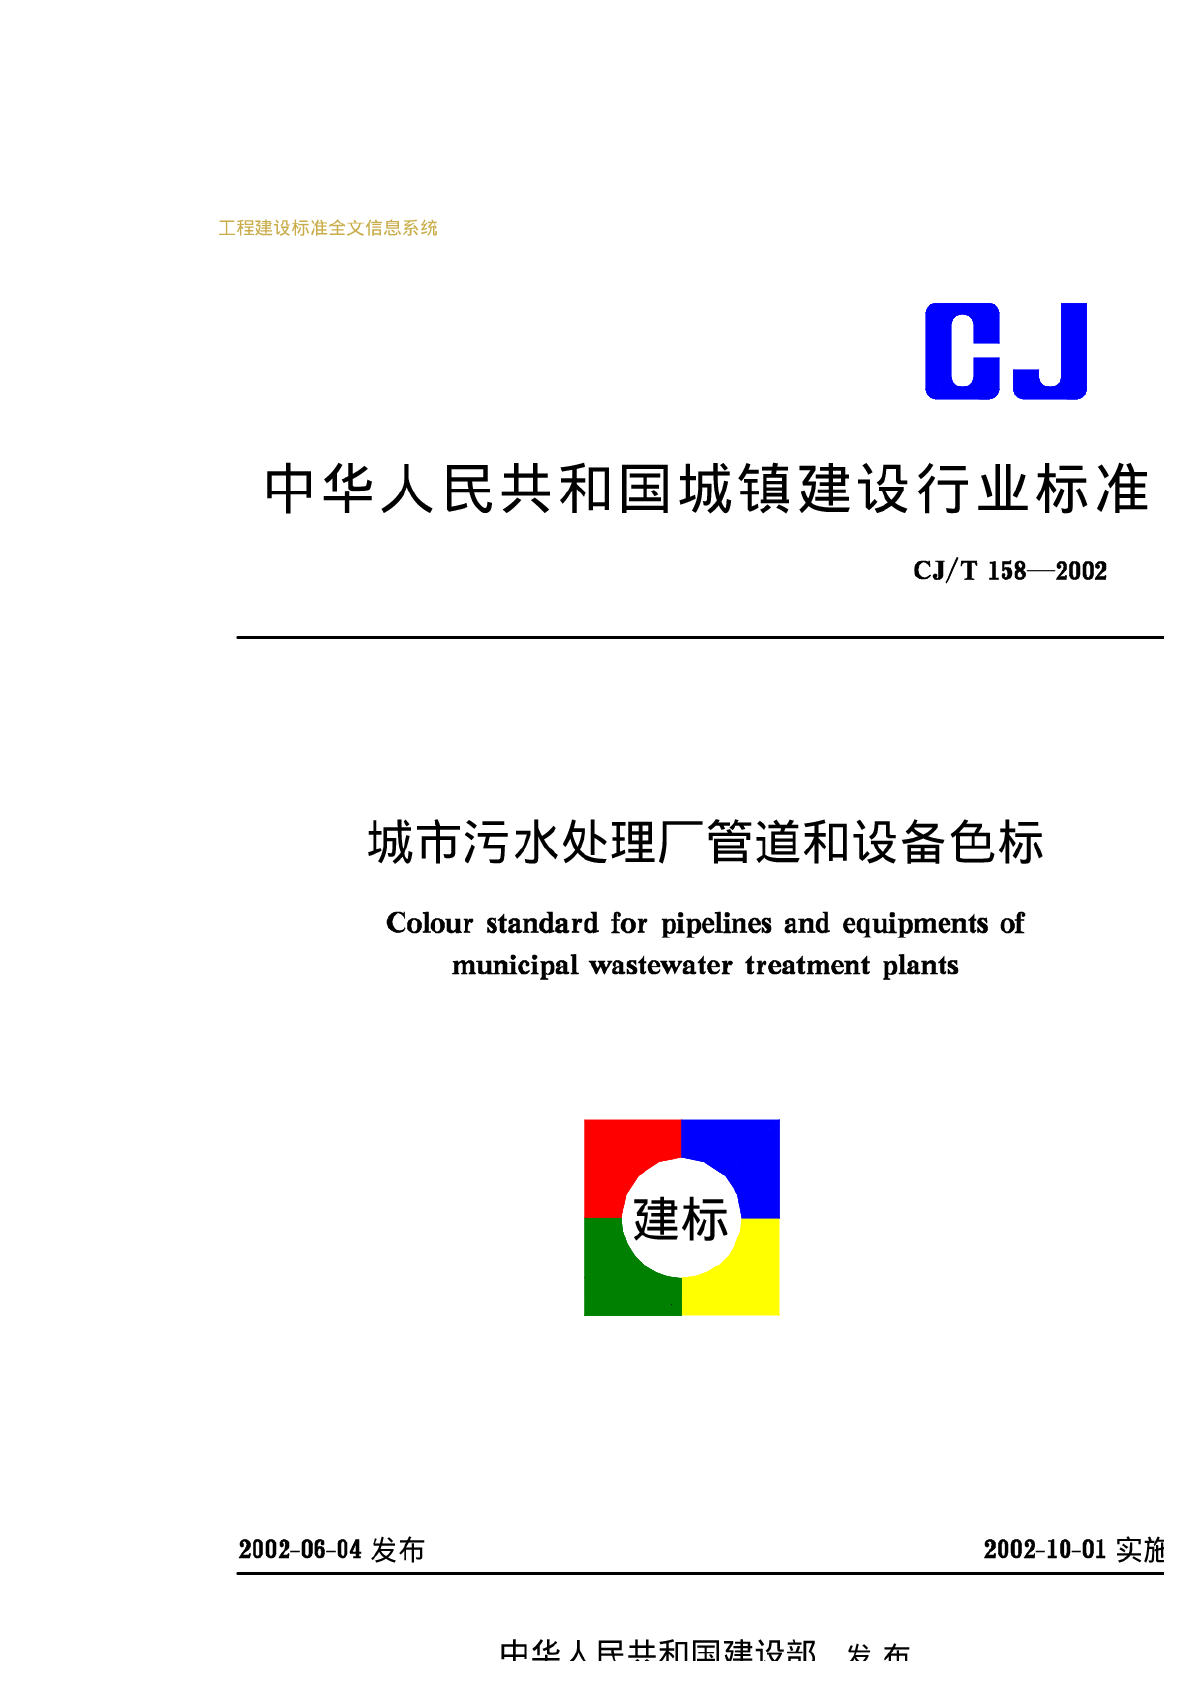 CJT158-2002城市污水处理厂管道和设备色标